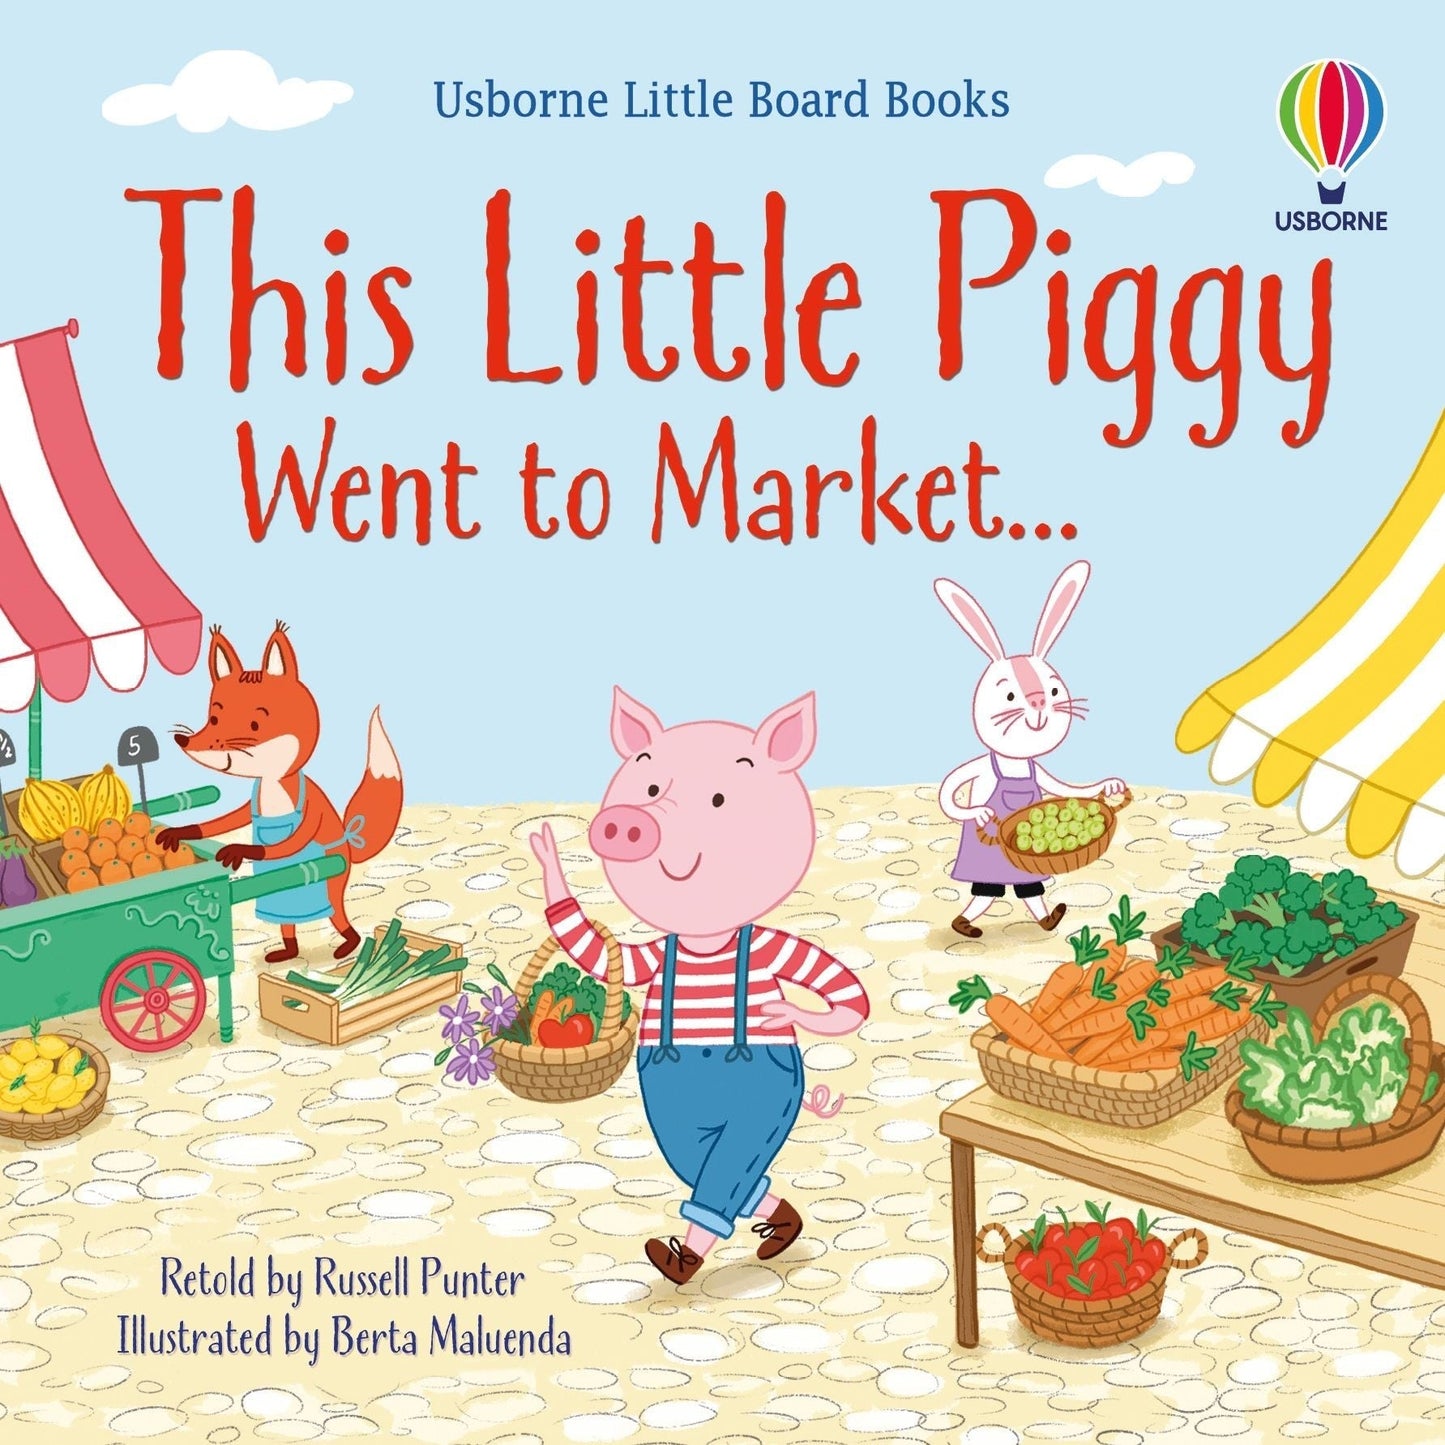 This Little Piggy Went to Market (Little Board Books) - Russell Punter & Berta Maluenda